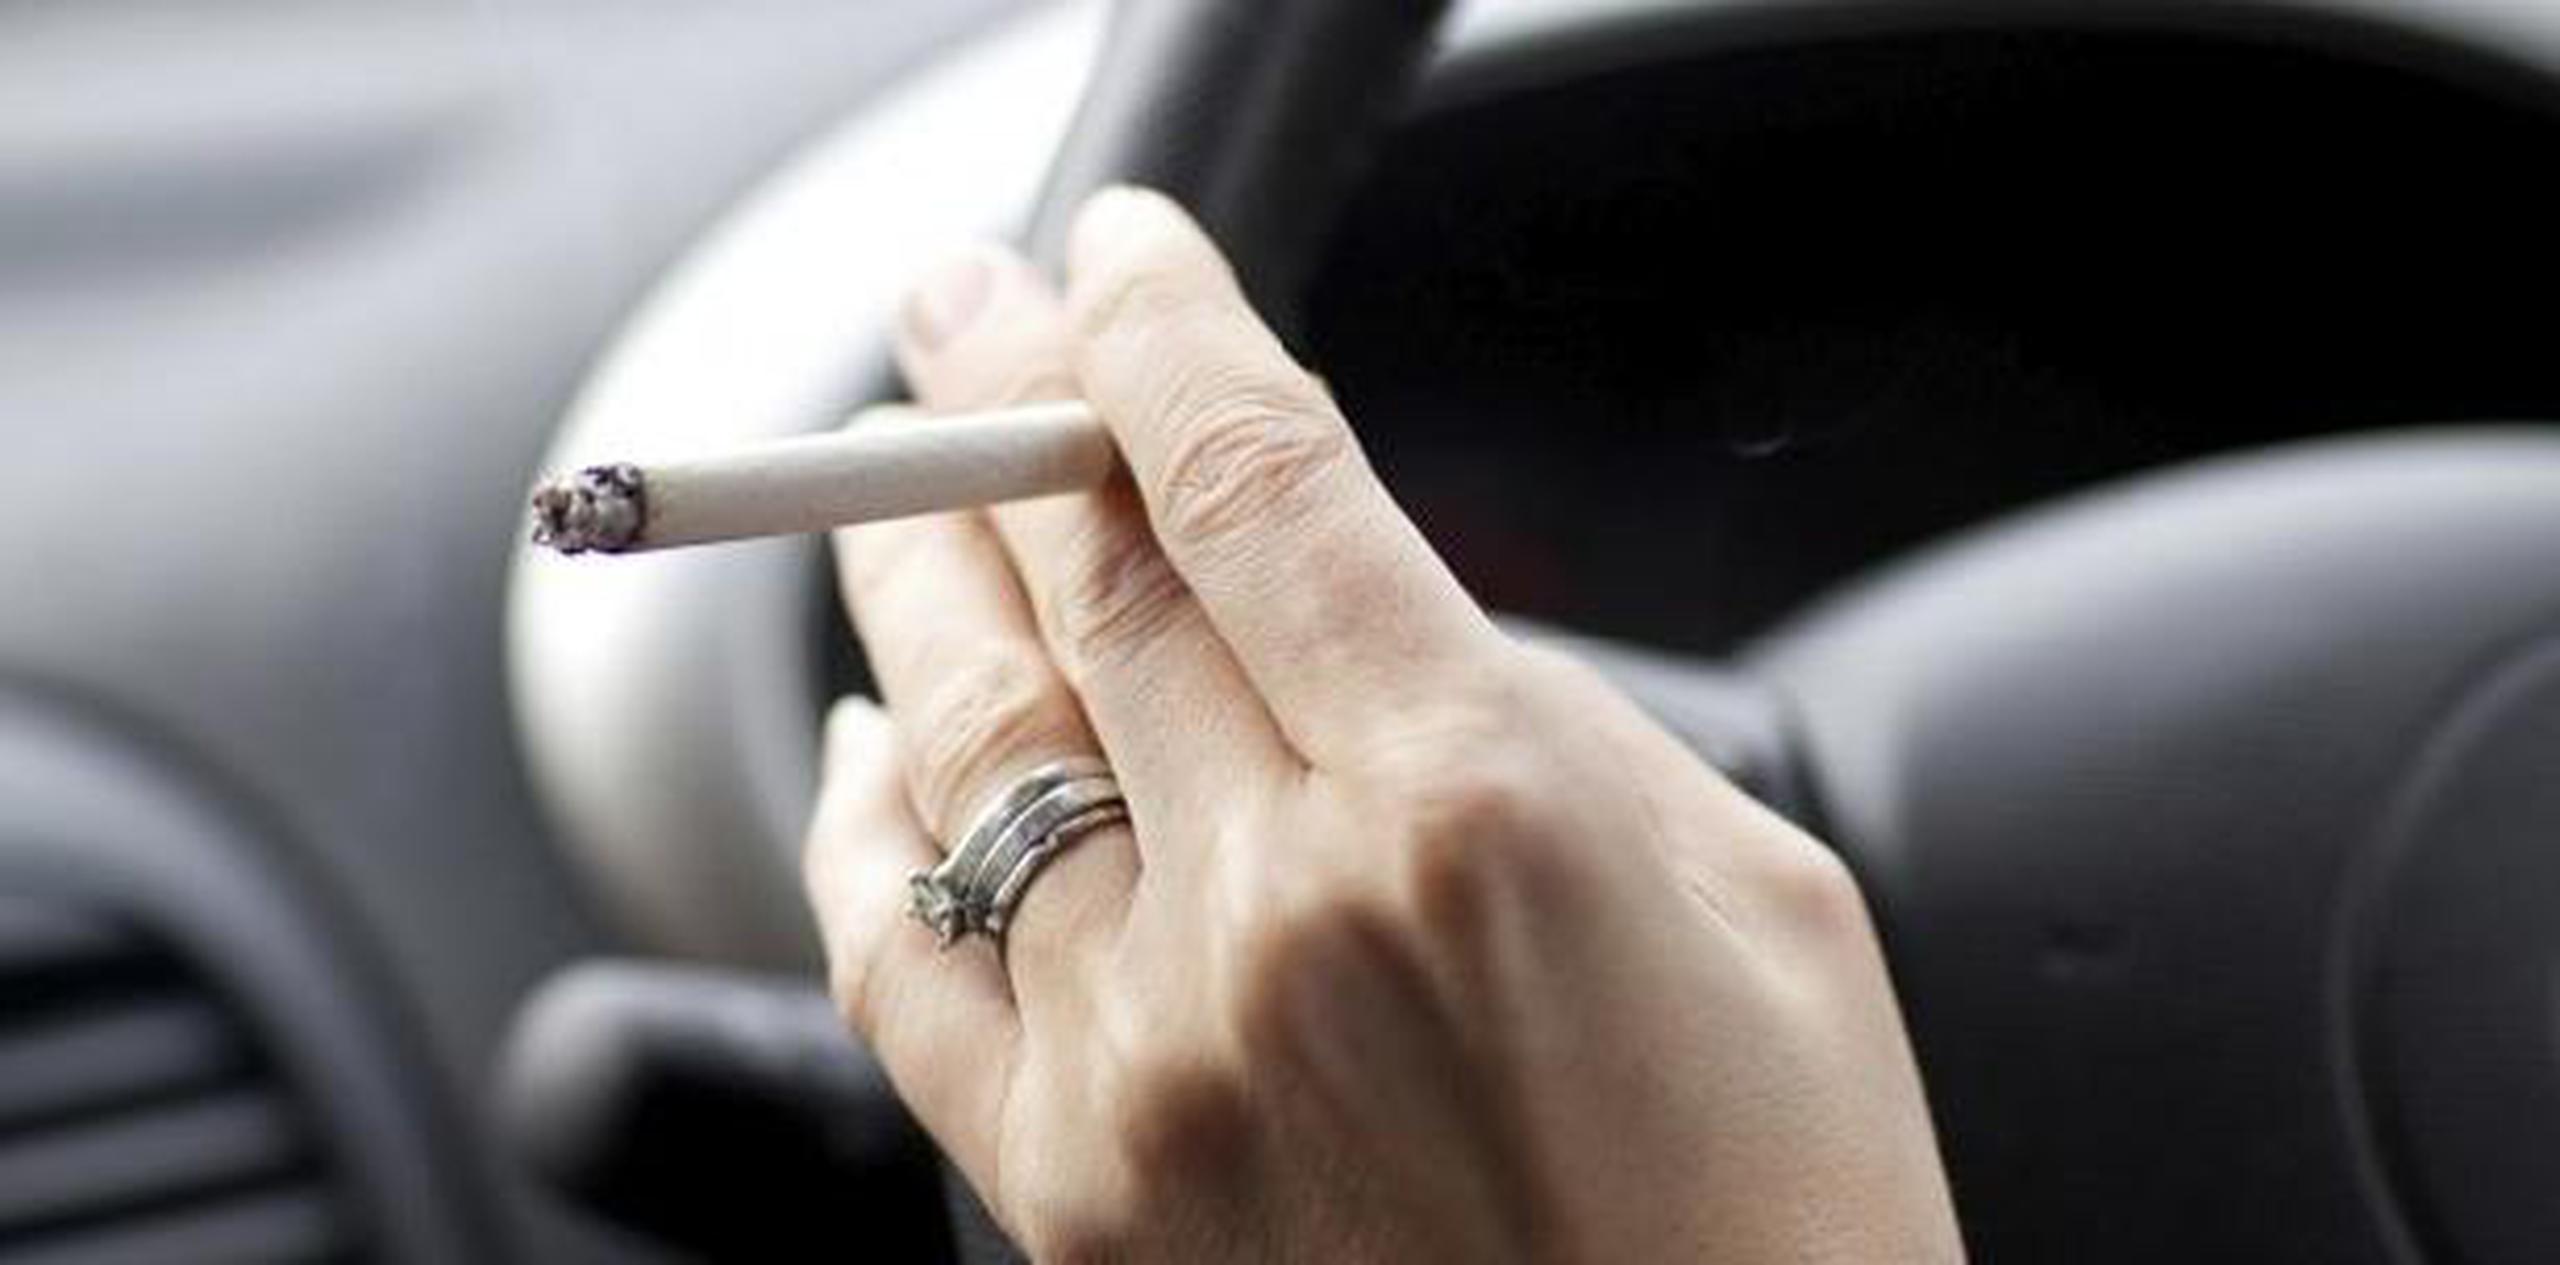 La nueva ley entrará en vigor el 1 de enero y desde ese día cualquiera que fume o permita que lo haga otra persona en un vehículo con menores a bordo podrá ser multado por la Policía irlandesa (Garda) con un mínimo de 100 euros. (Archivo)